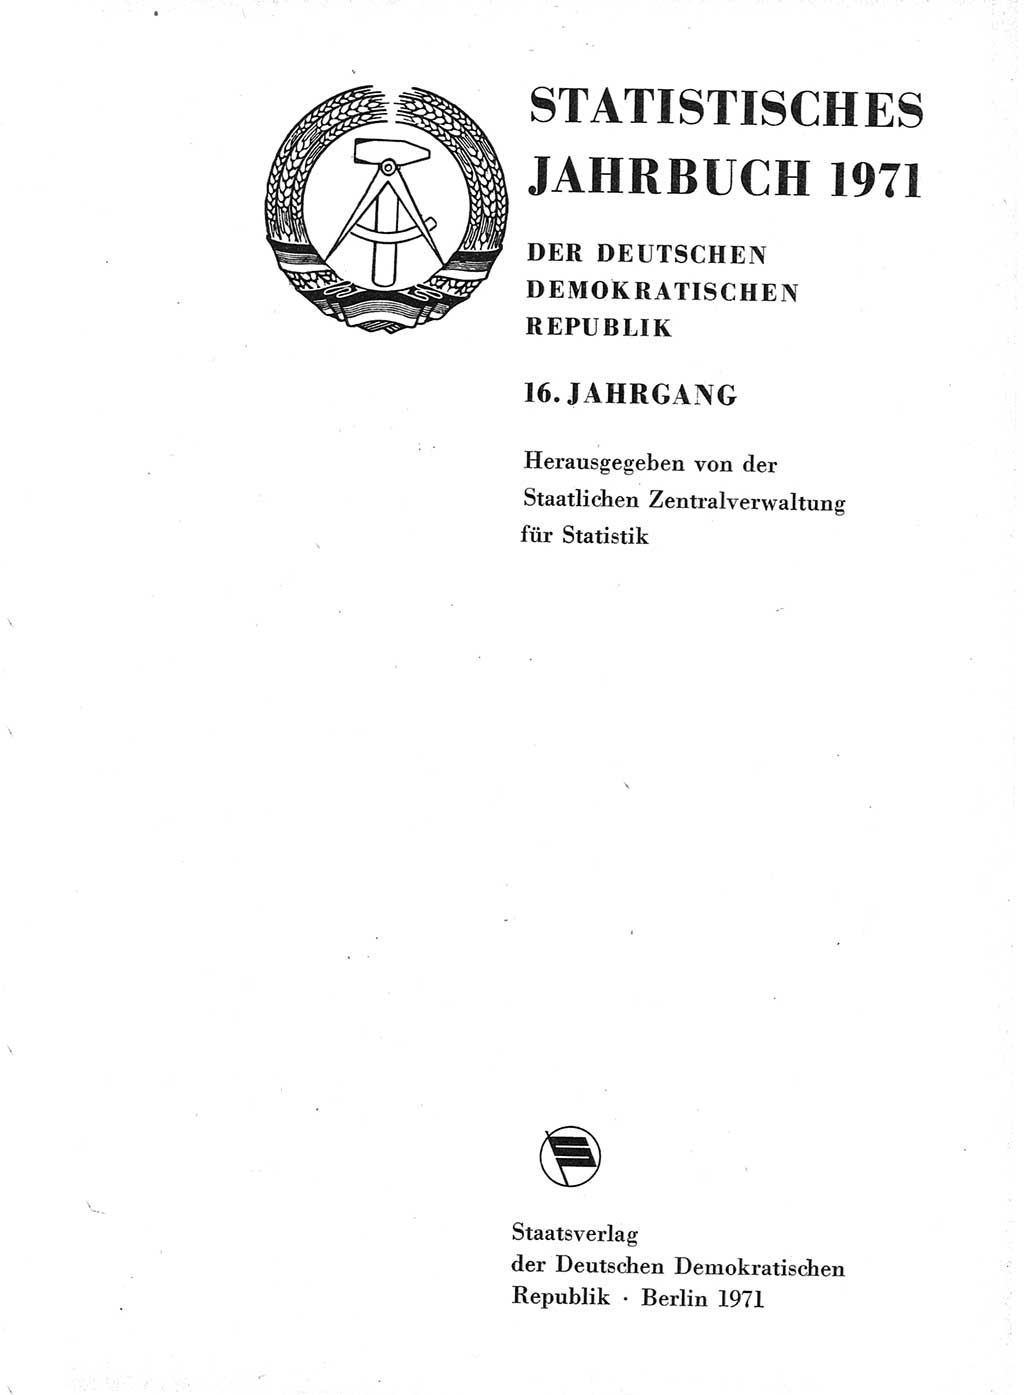 Statistisches Jahrbuch der Deutschen Demokratischen Republik (DDR) 1971, Seite 1 (Stat. Jb. DDR 1971, S. 1)